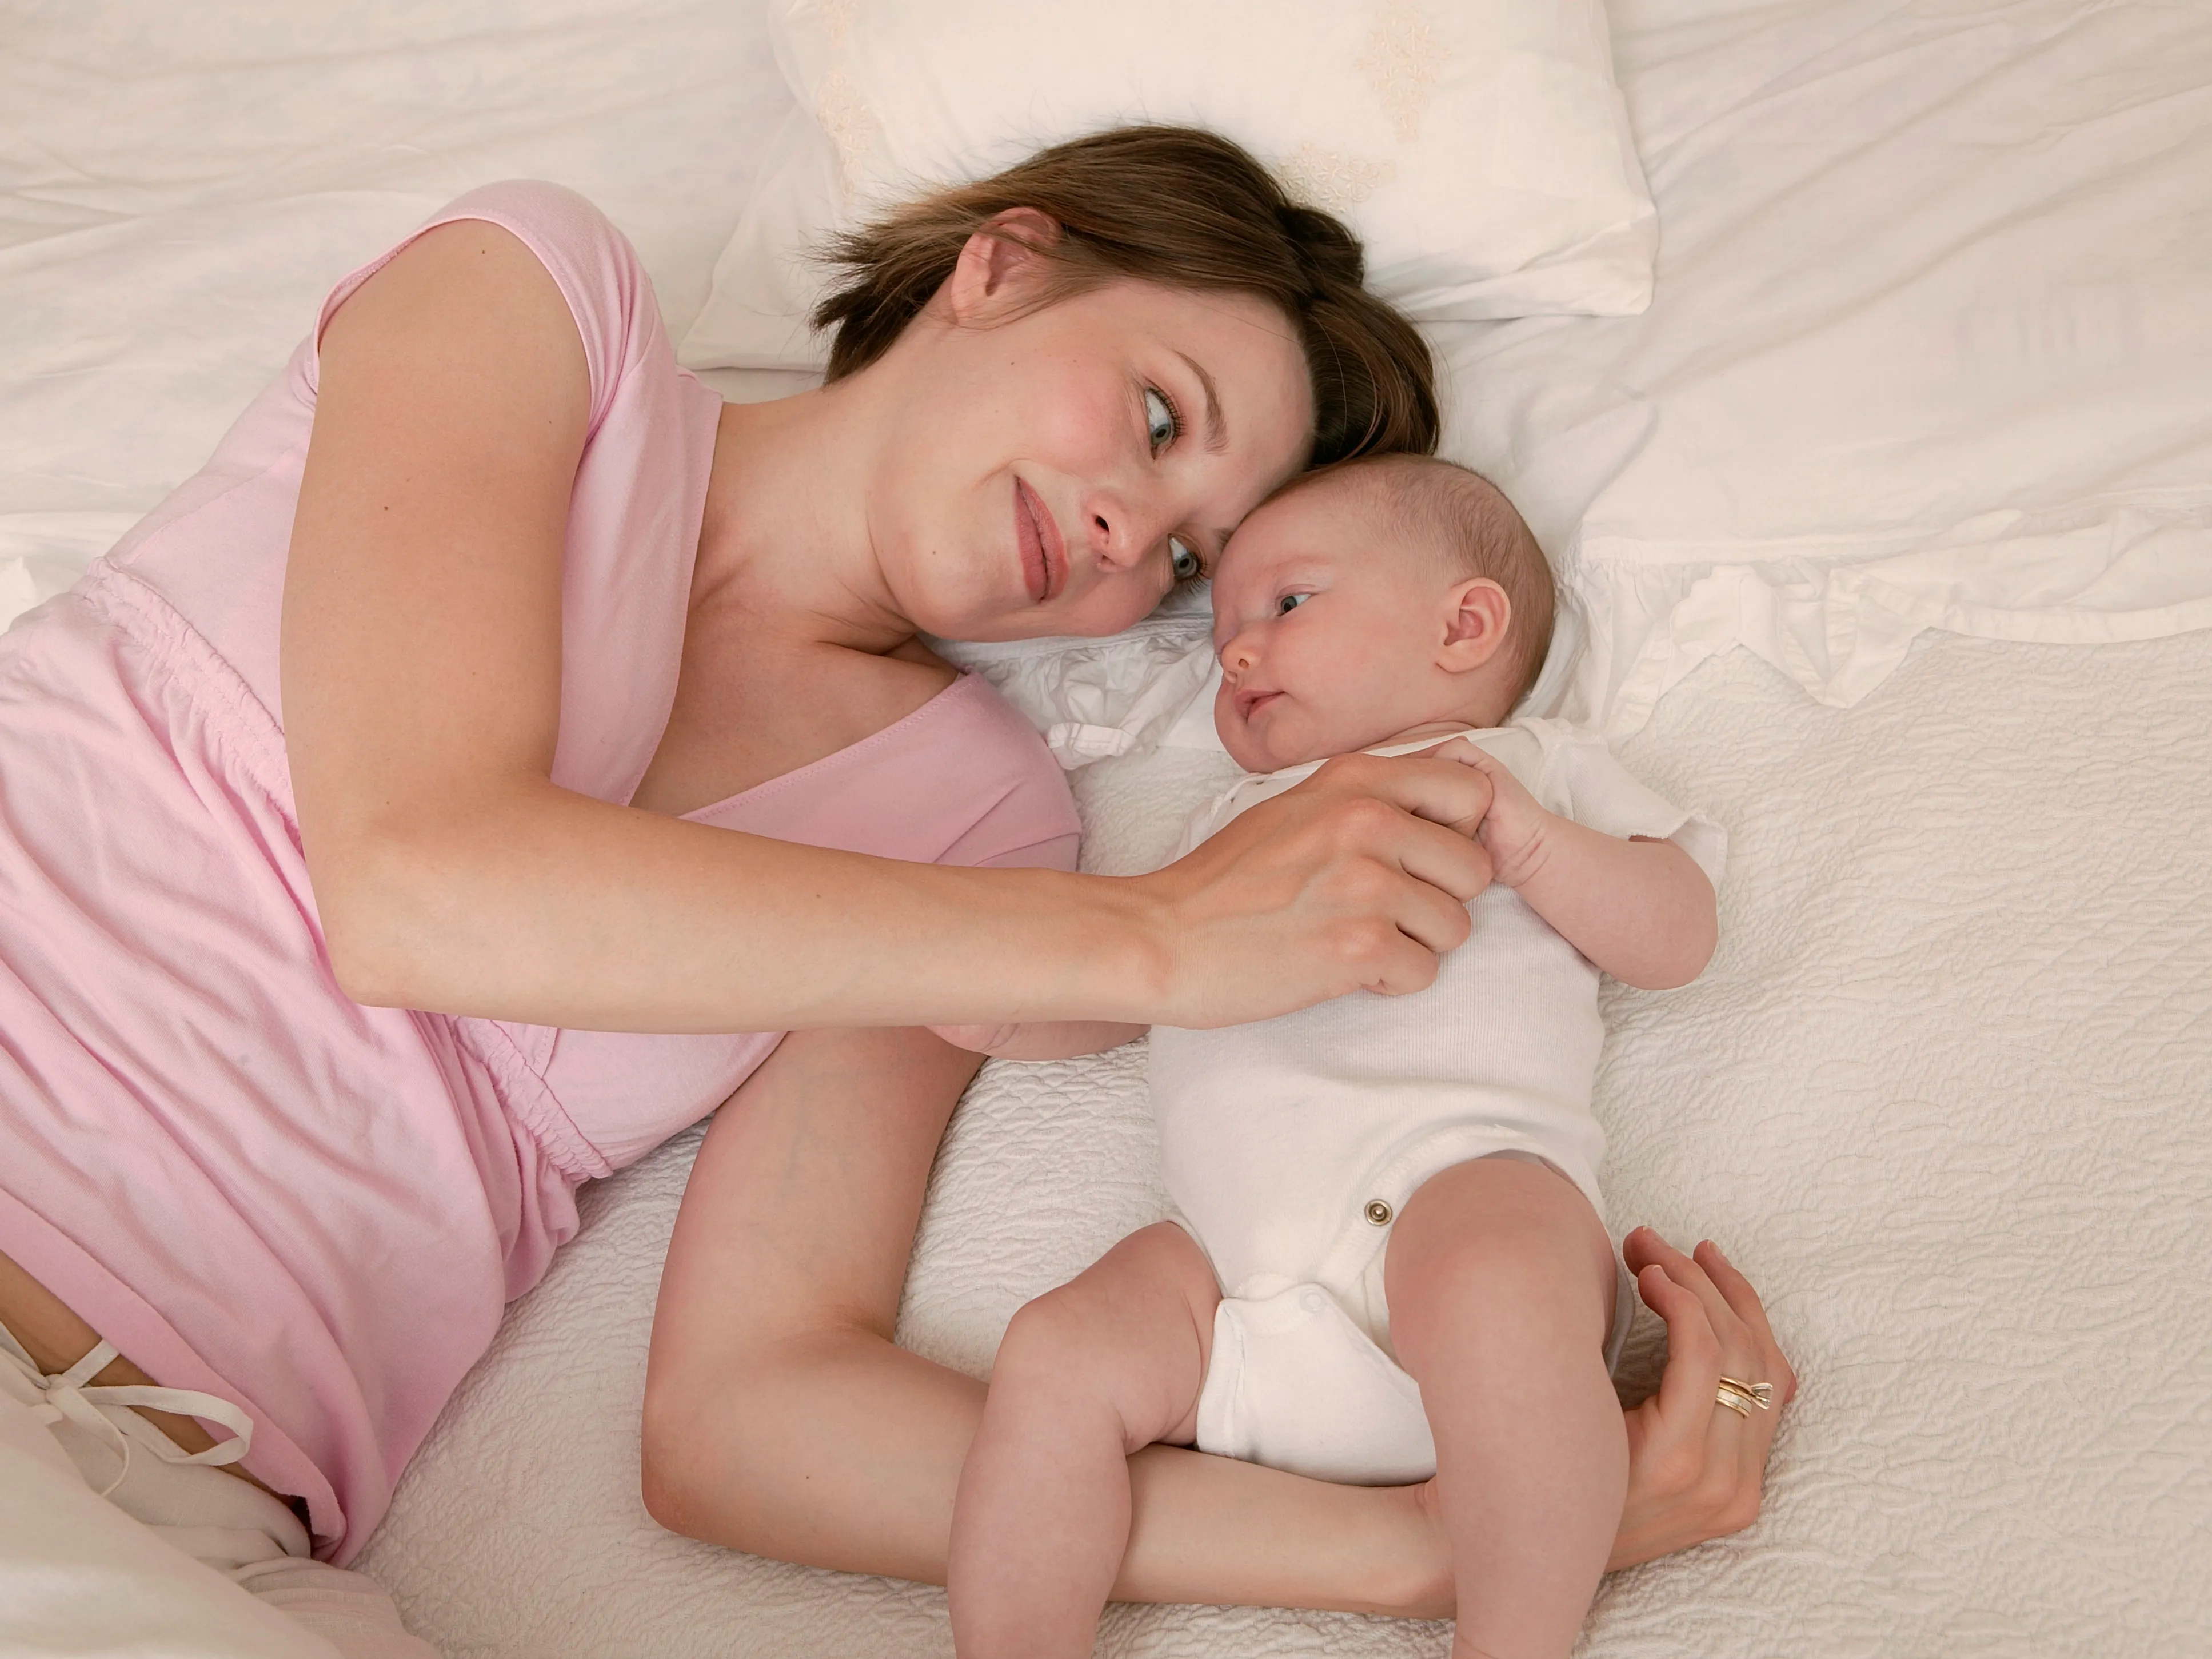 Votre Valise De Maternite Pour Bebe Et Vous